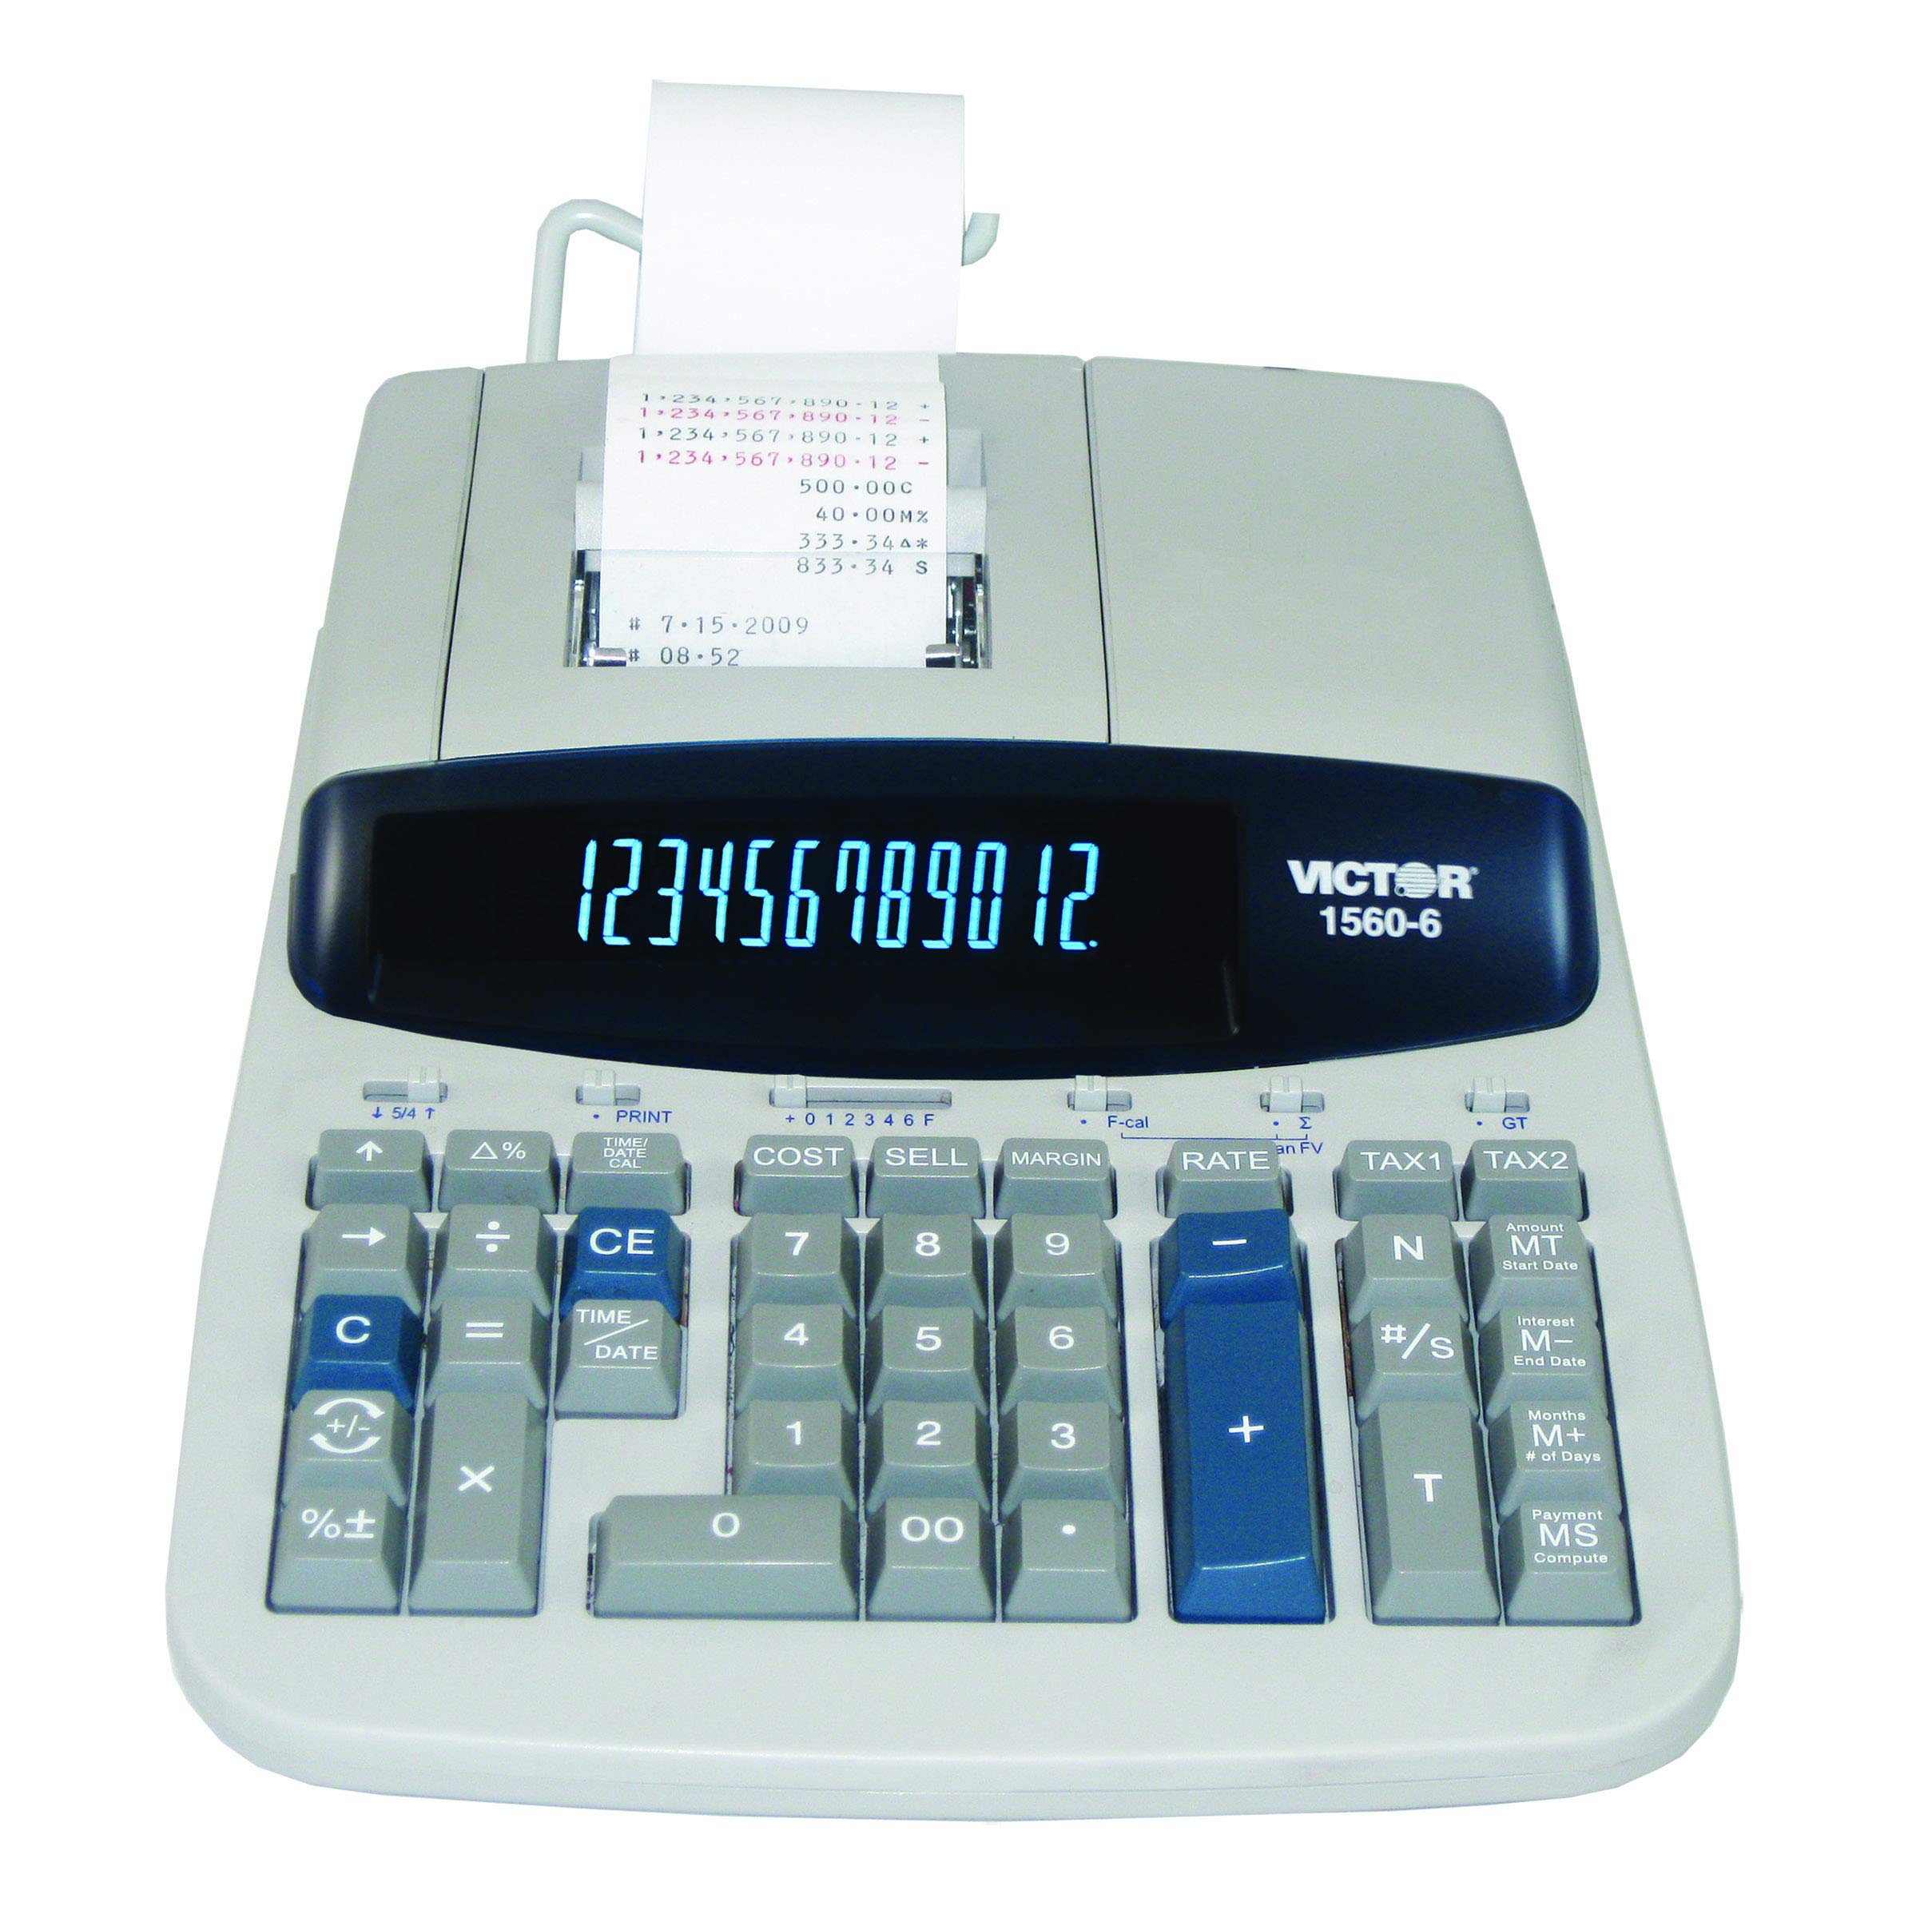 Victor 1560-6 12-cyfrowy kalkulator do druku komercyjnego o dużej wytrzymałości z dużym wyświetlaczem i kreatorem pożyczek